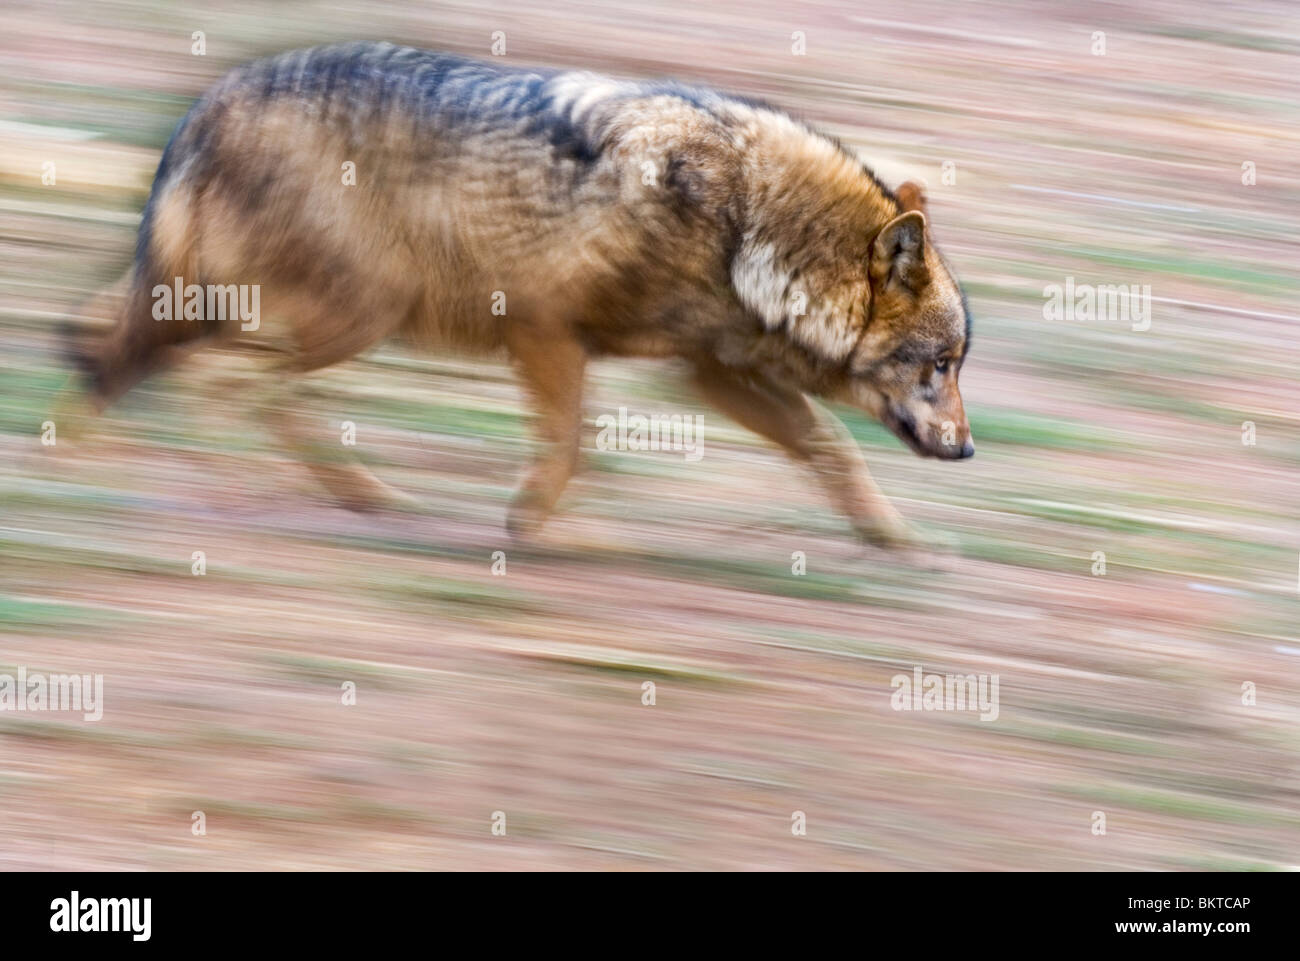 Rennende Wolf Gefotografeerd traf Langzame Sluitertijd; Laufen mit einer langen Verschlusszeit fotografiert Wolf Stockfoto